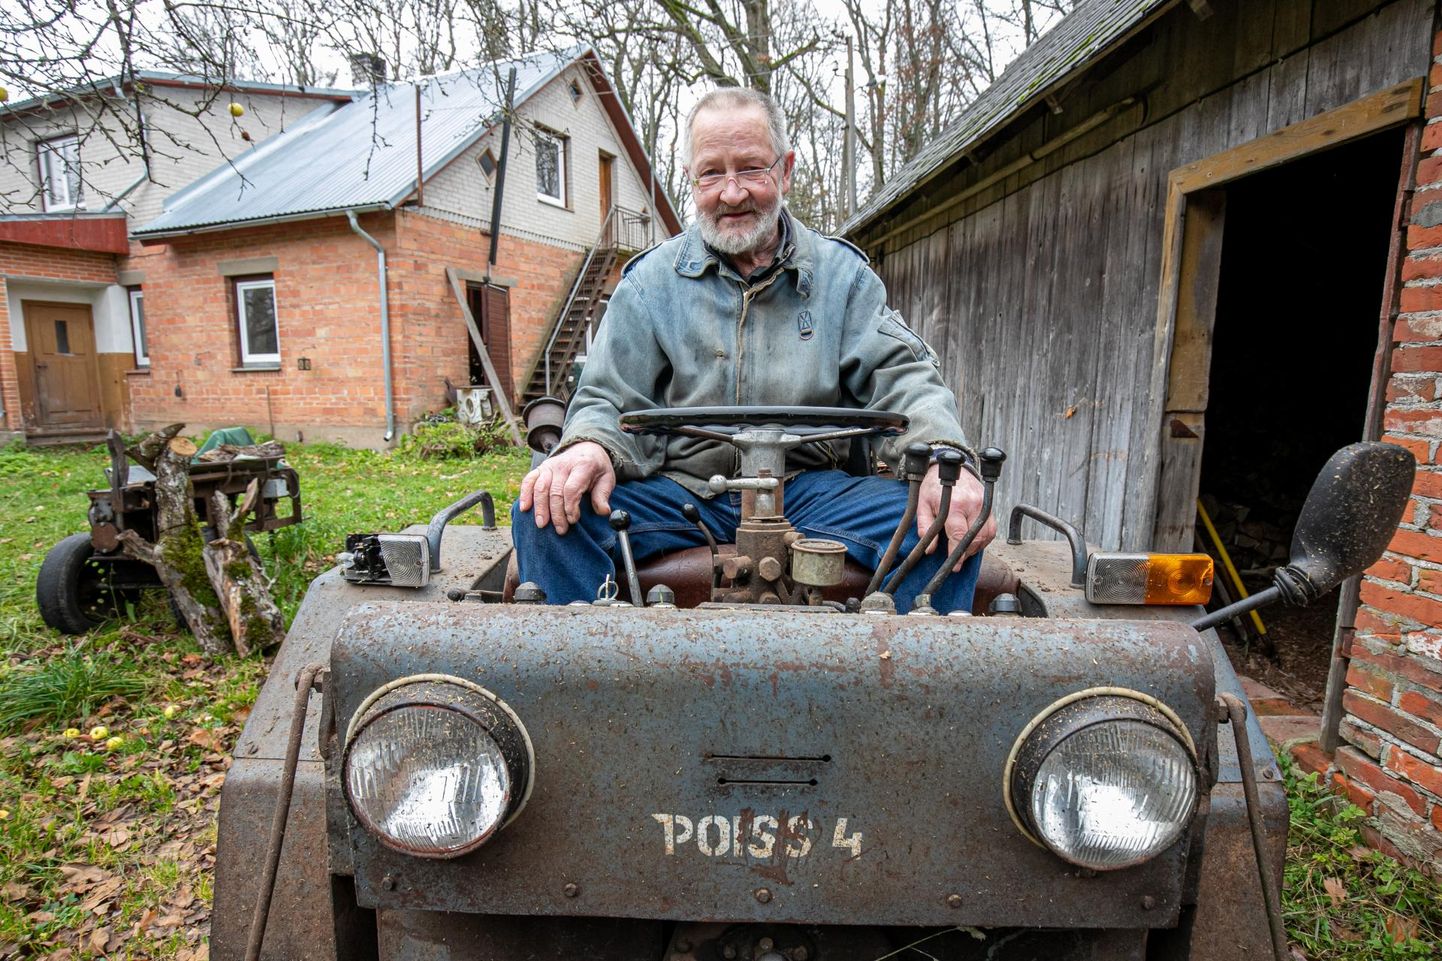 Aia talu peremees Ivo Aasov roolib enda kätega ehitatud mitmeotstarbelist traktorit “Poiss 4” ehk järjekorras neljandat masinat, millega põllu- ja heinatöid teha.